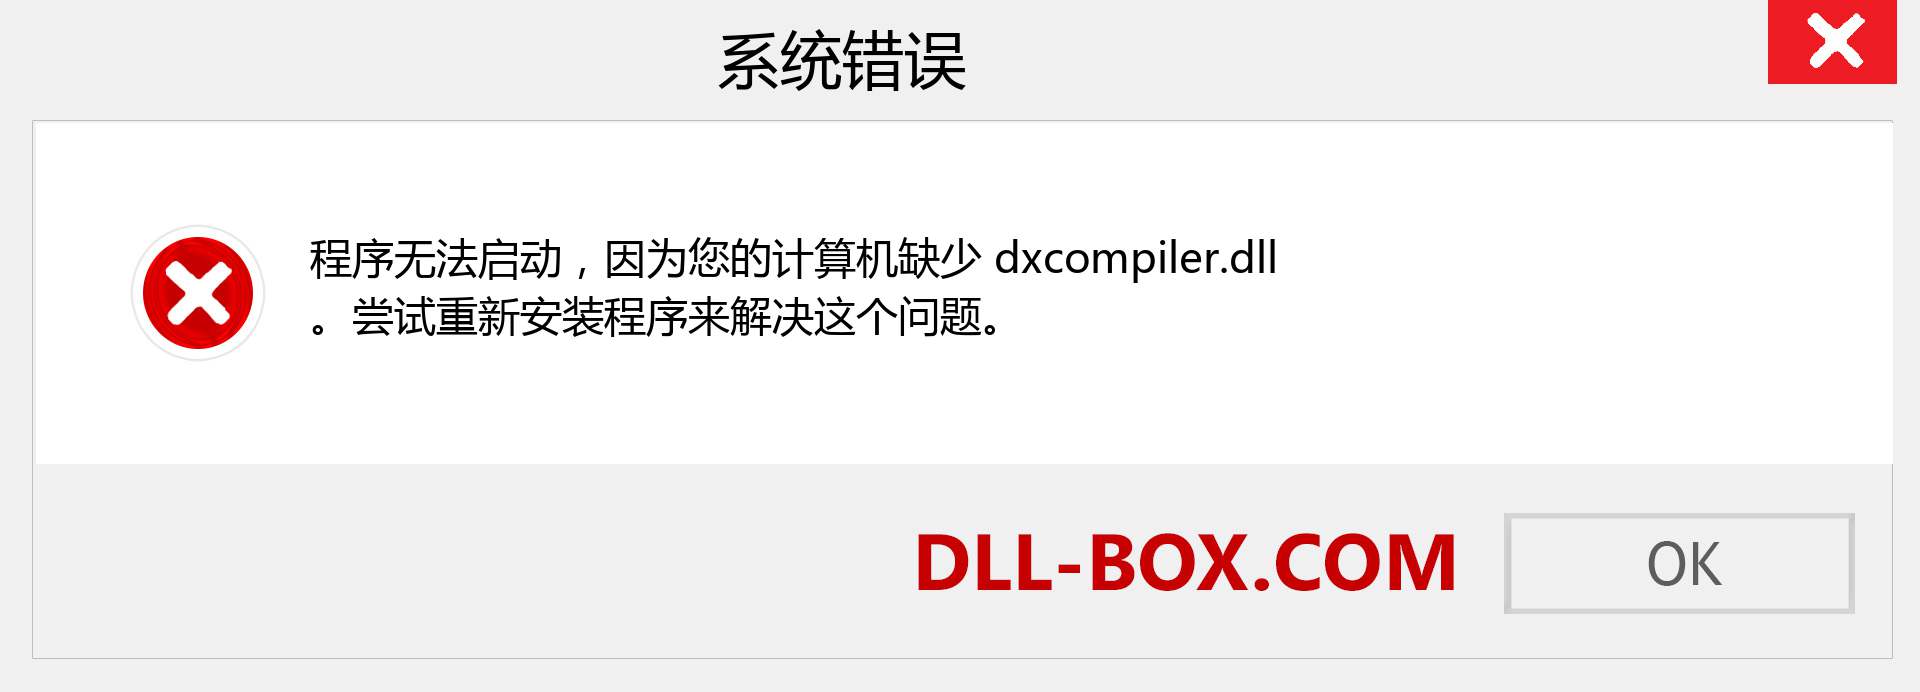 dxcompiler.dll 文件丢失？。 适用于 Windows 7、8、10 的下载 - 修复 Windows、照片、图像上的 dxcompiler dll 丢失错误